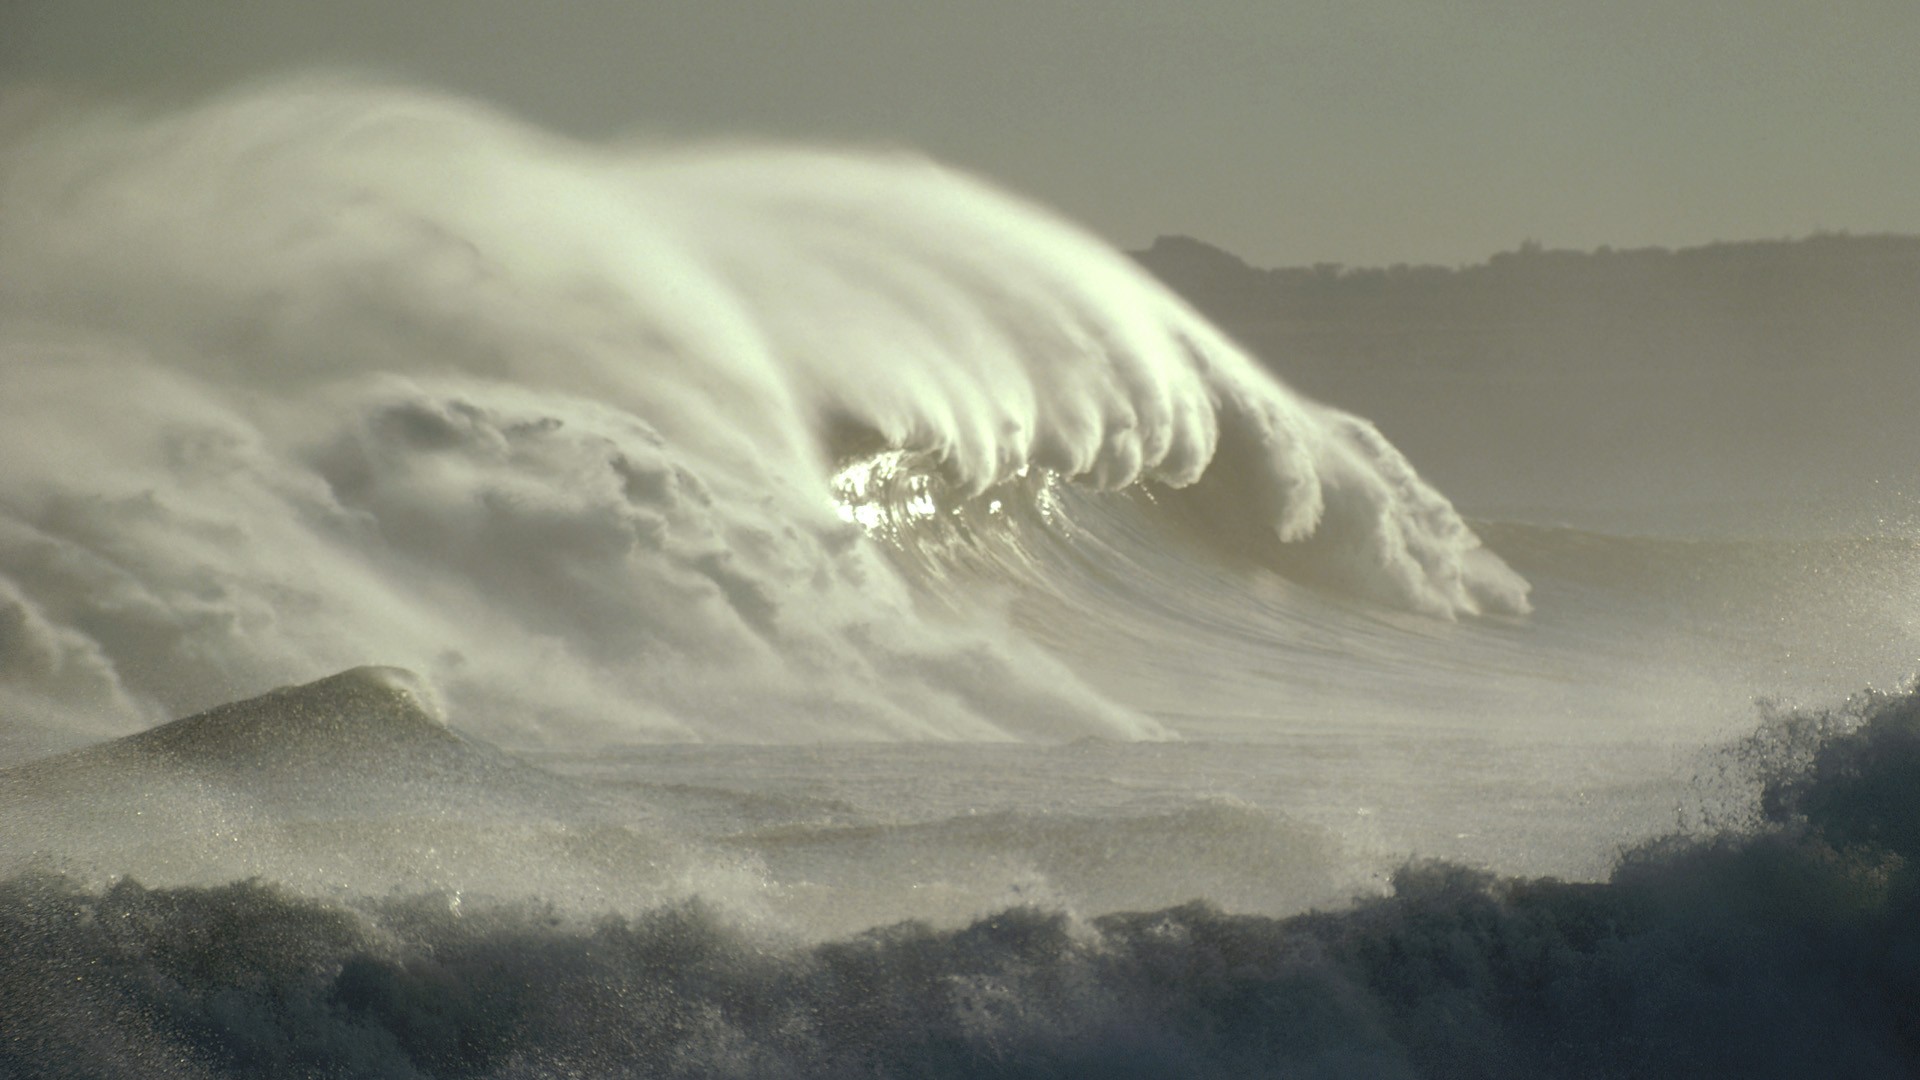 waves, Mexico, California - desktop wallpaper